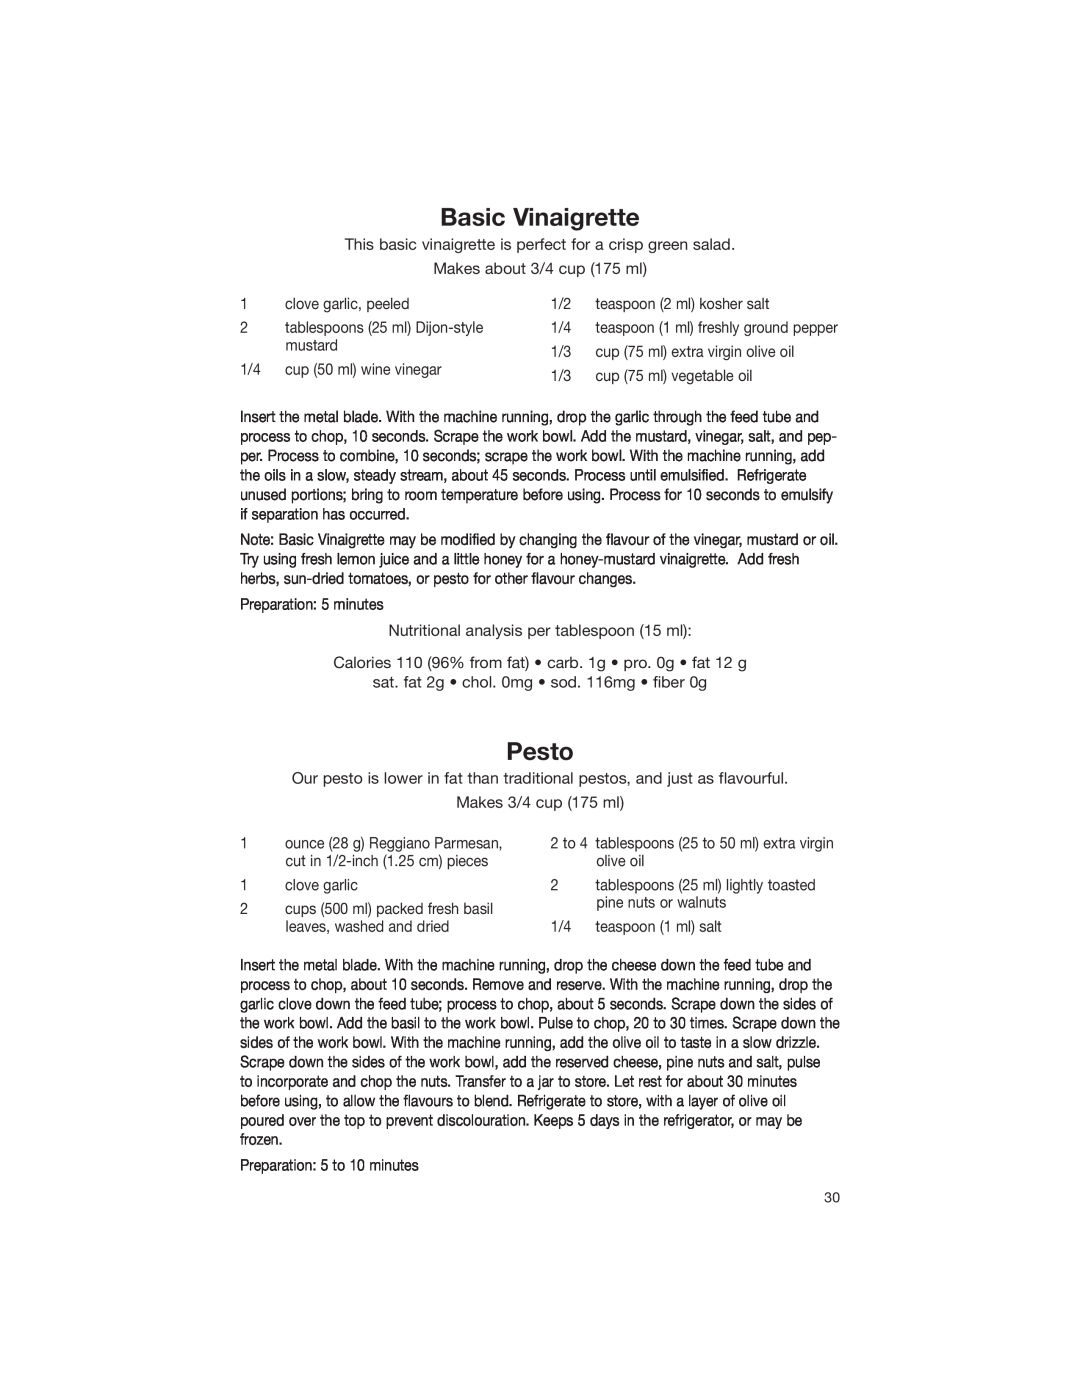 Cuisinart DLC-2007NC manual Basic Vinaigrette, Pesto 